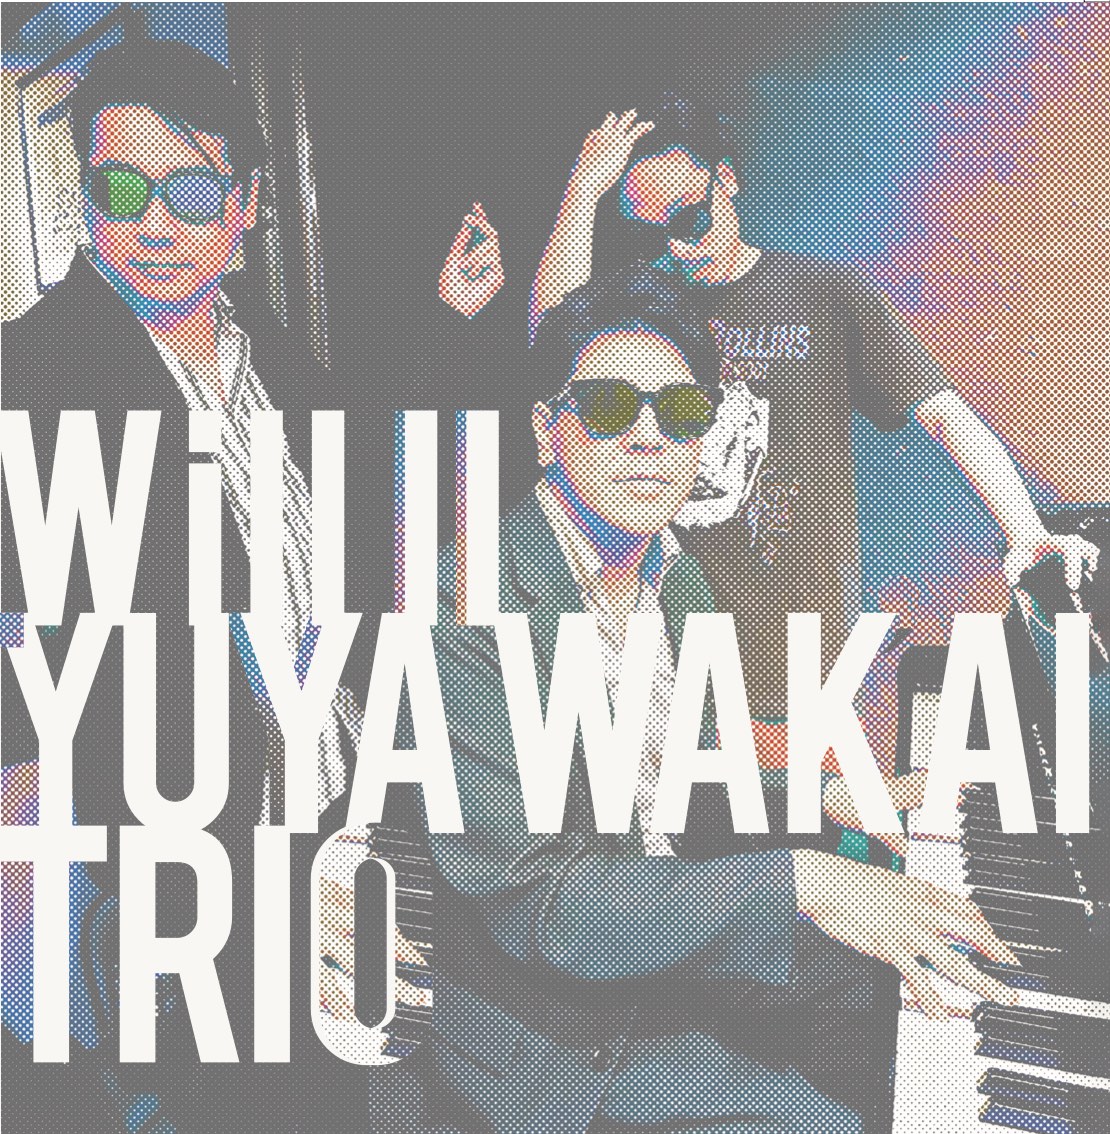 Will II - Yuya Wakai Trio